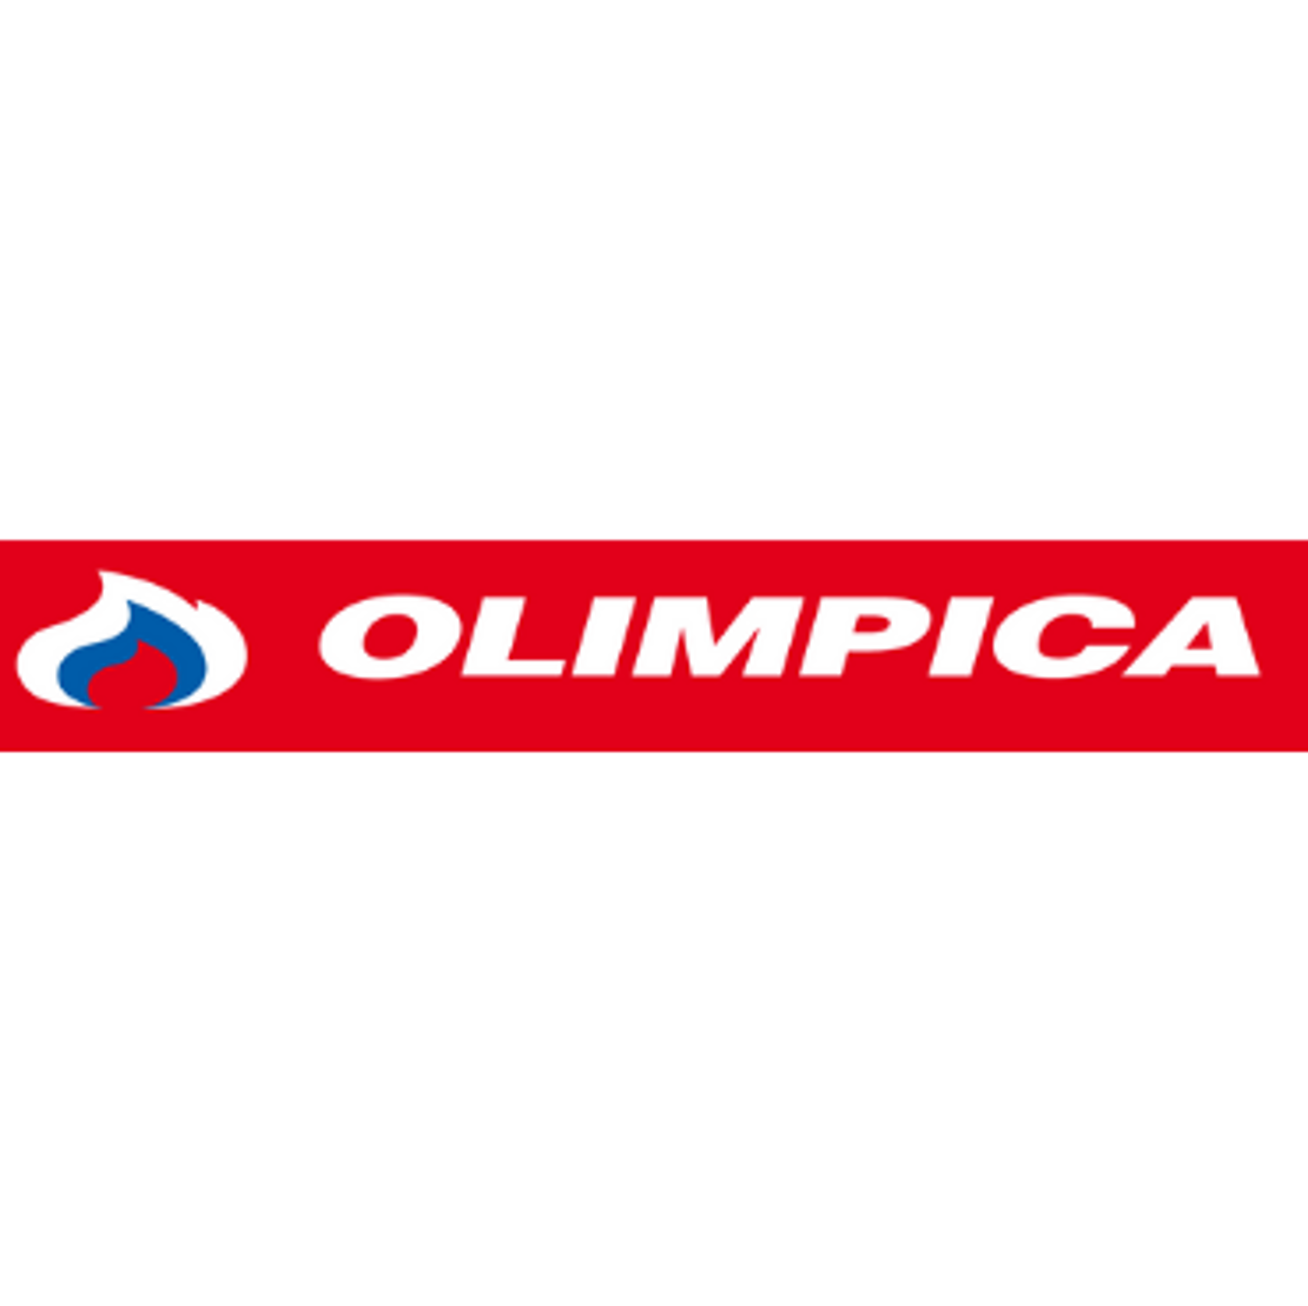 Olímpica: La gestión de entregas del retailer más grande de Colombia